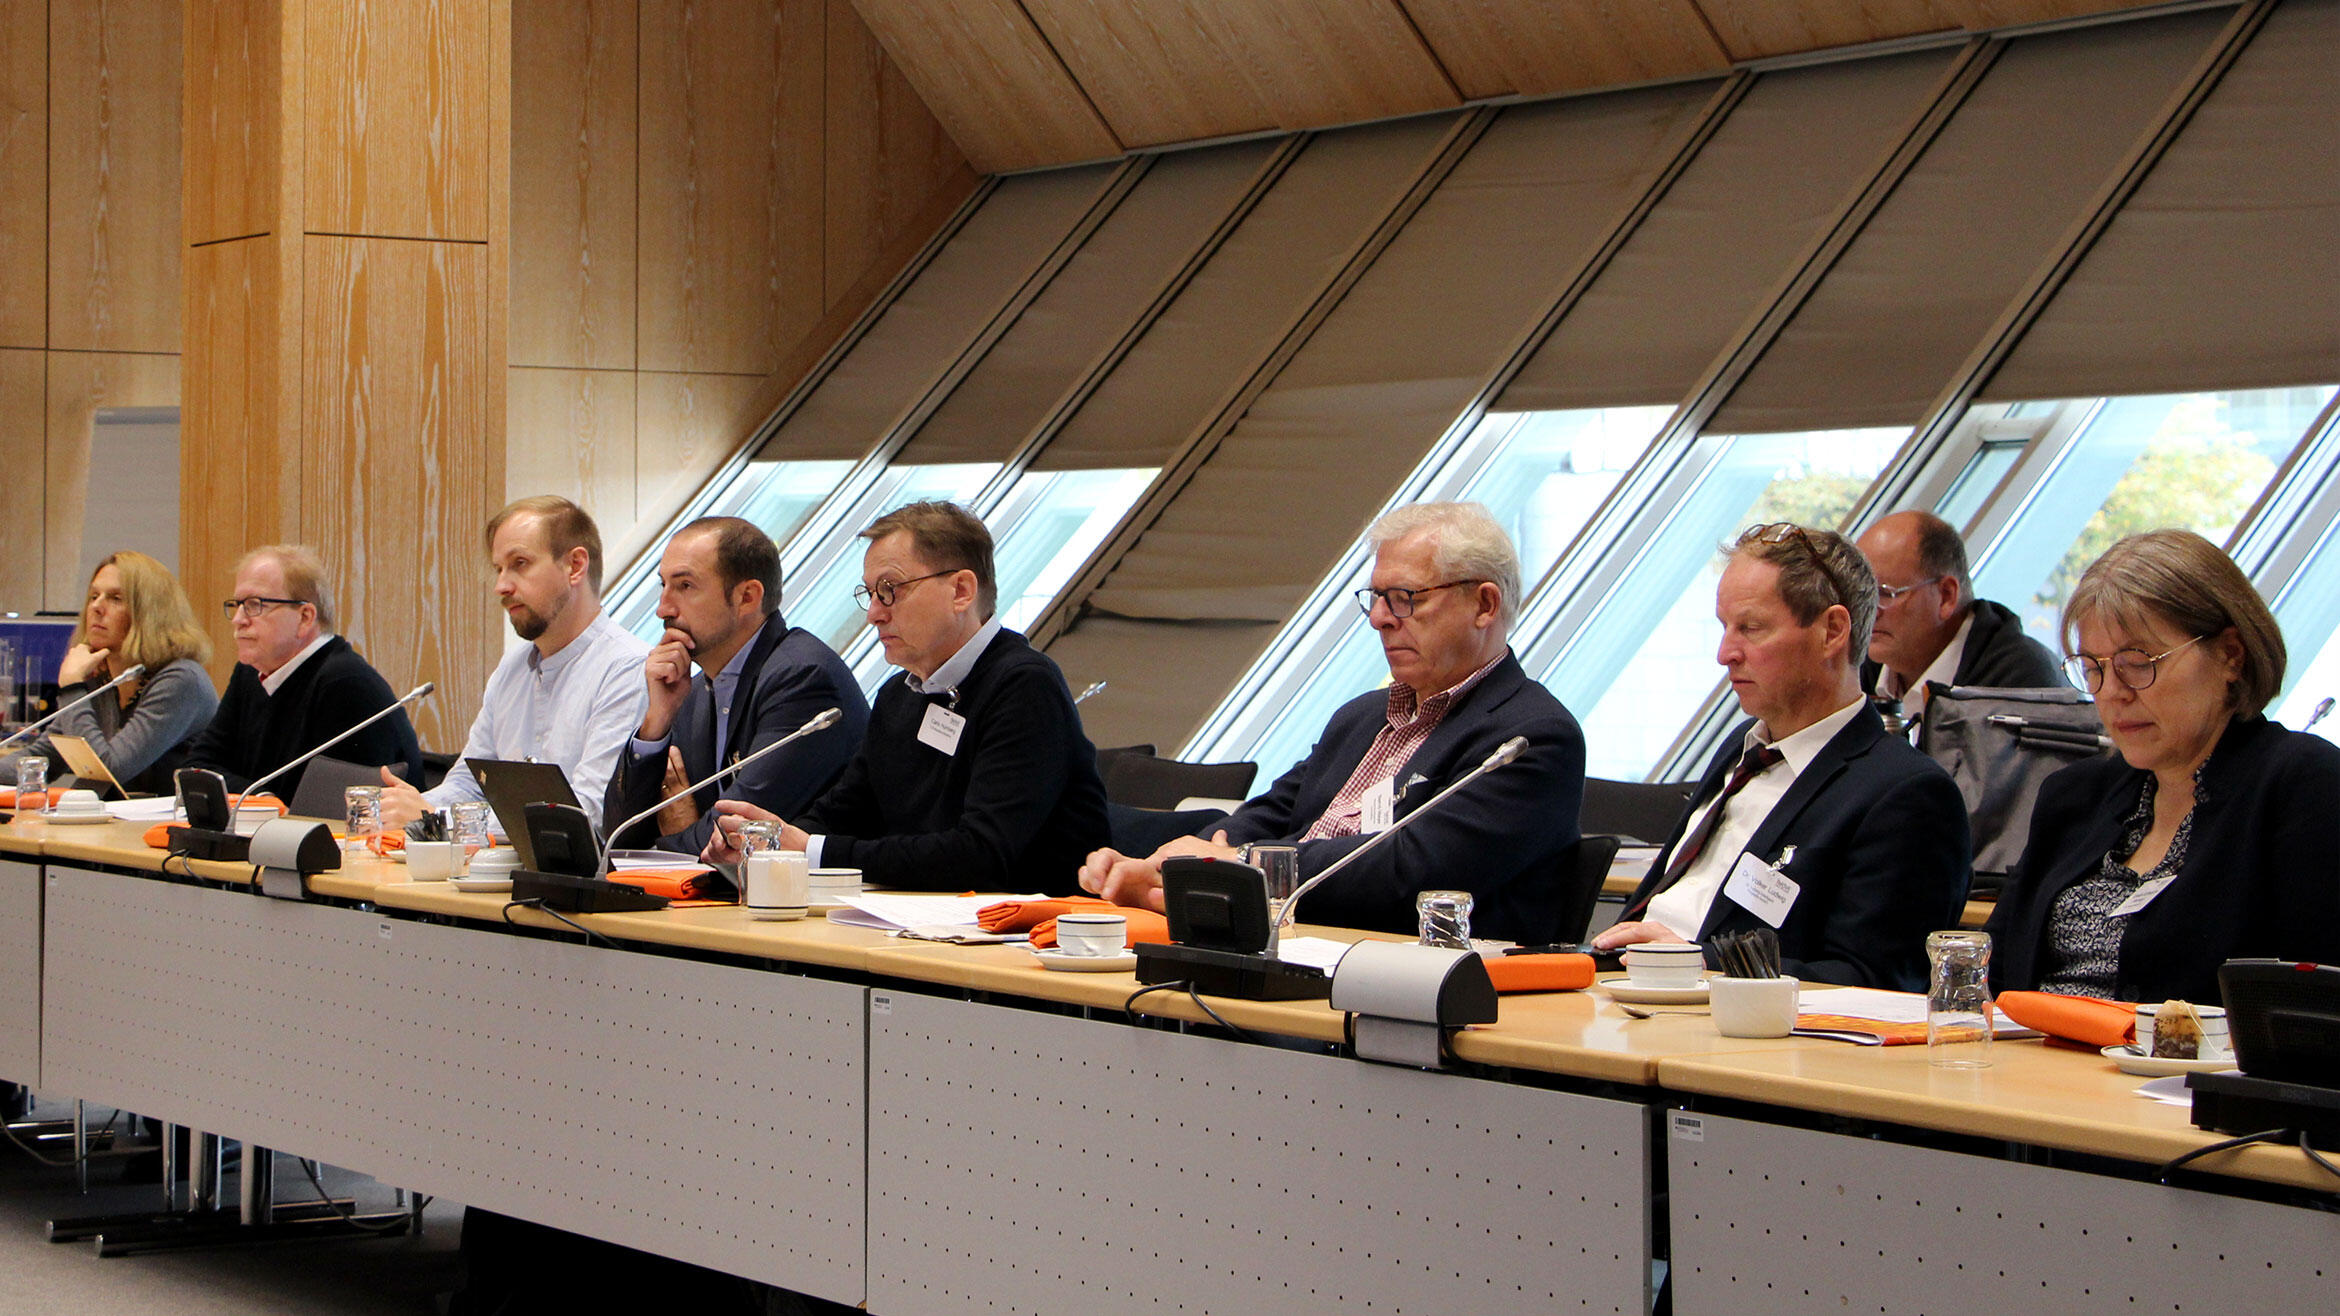 Blick auf eine Sitzreihe mit sieben Teilnehmern und zwei Teilnehmerinnen